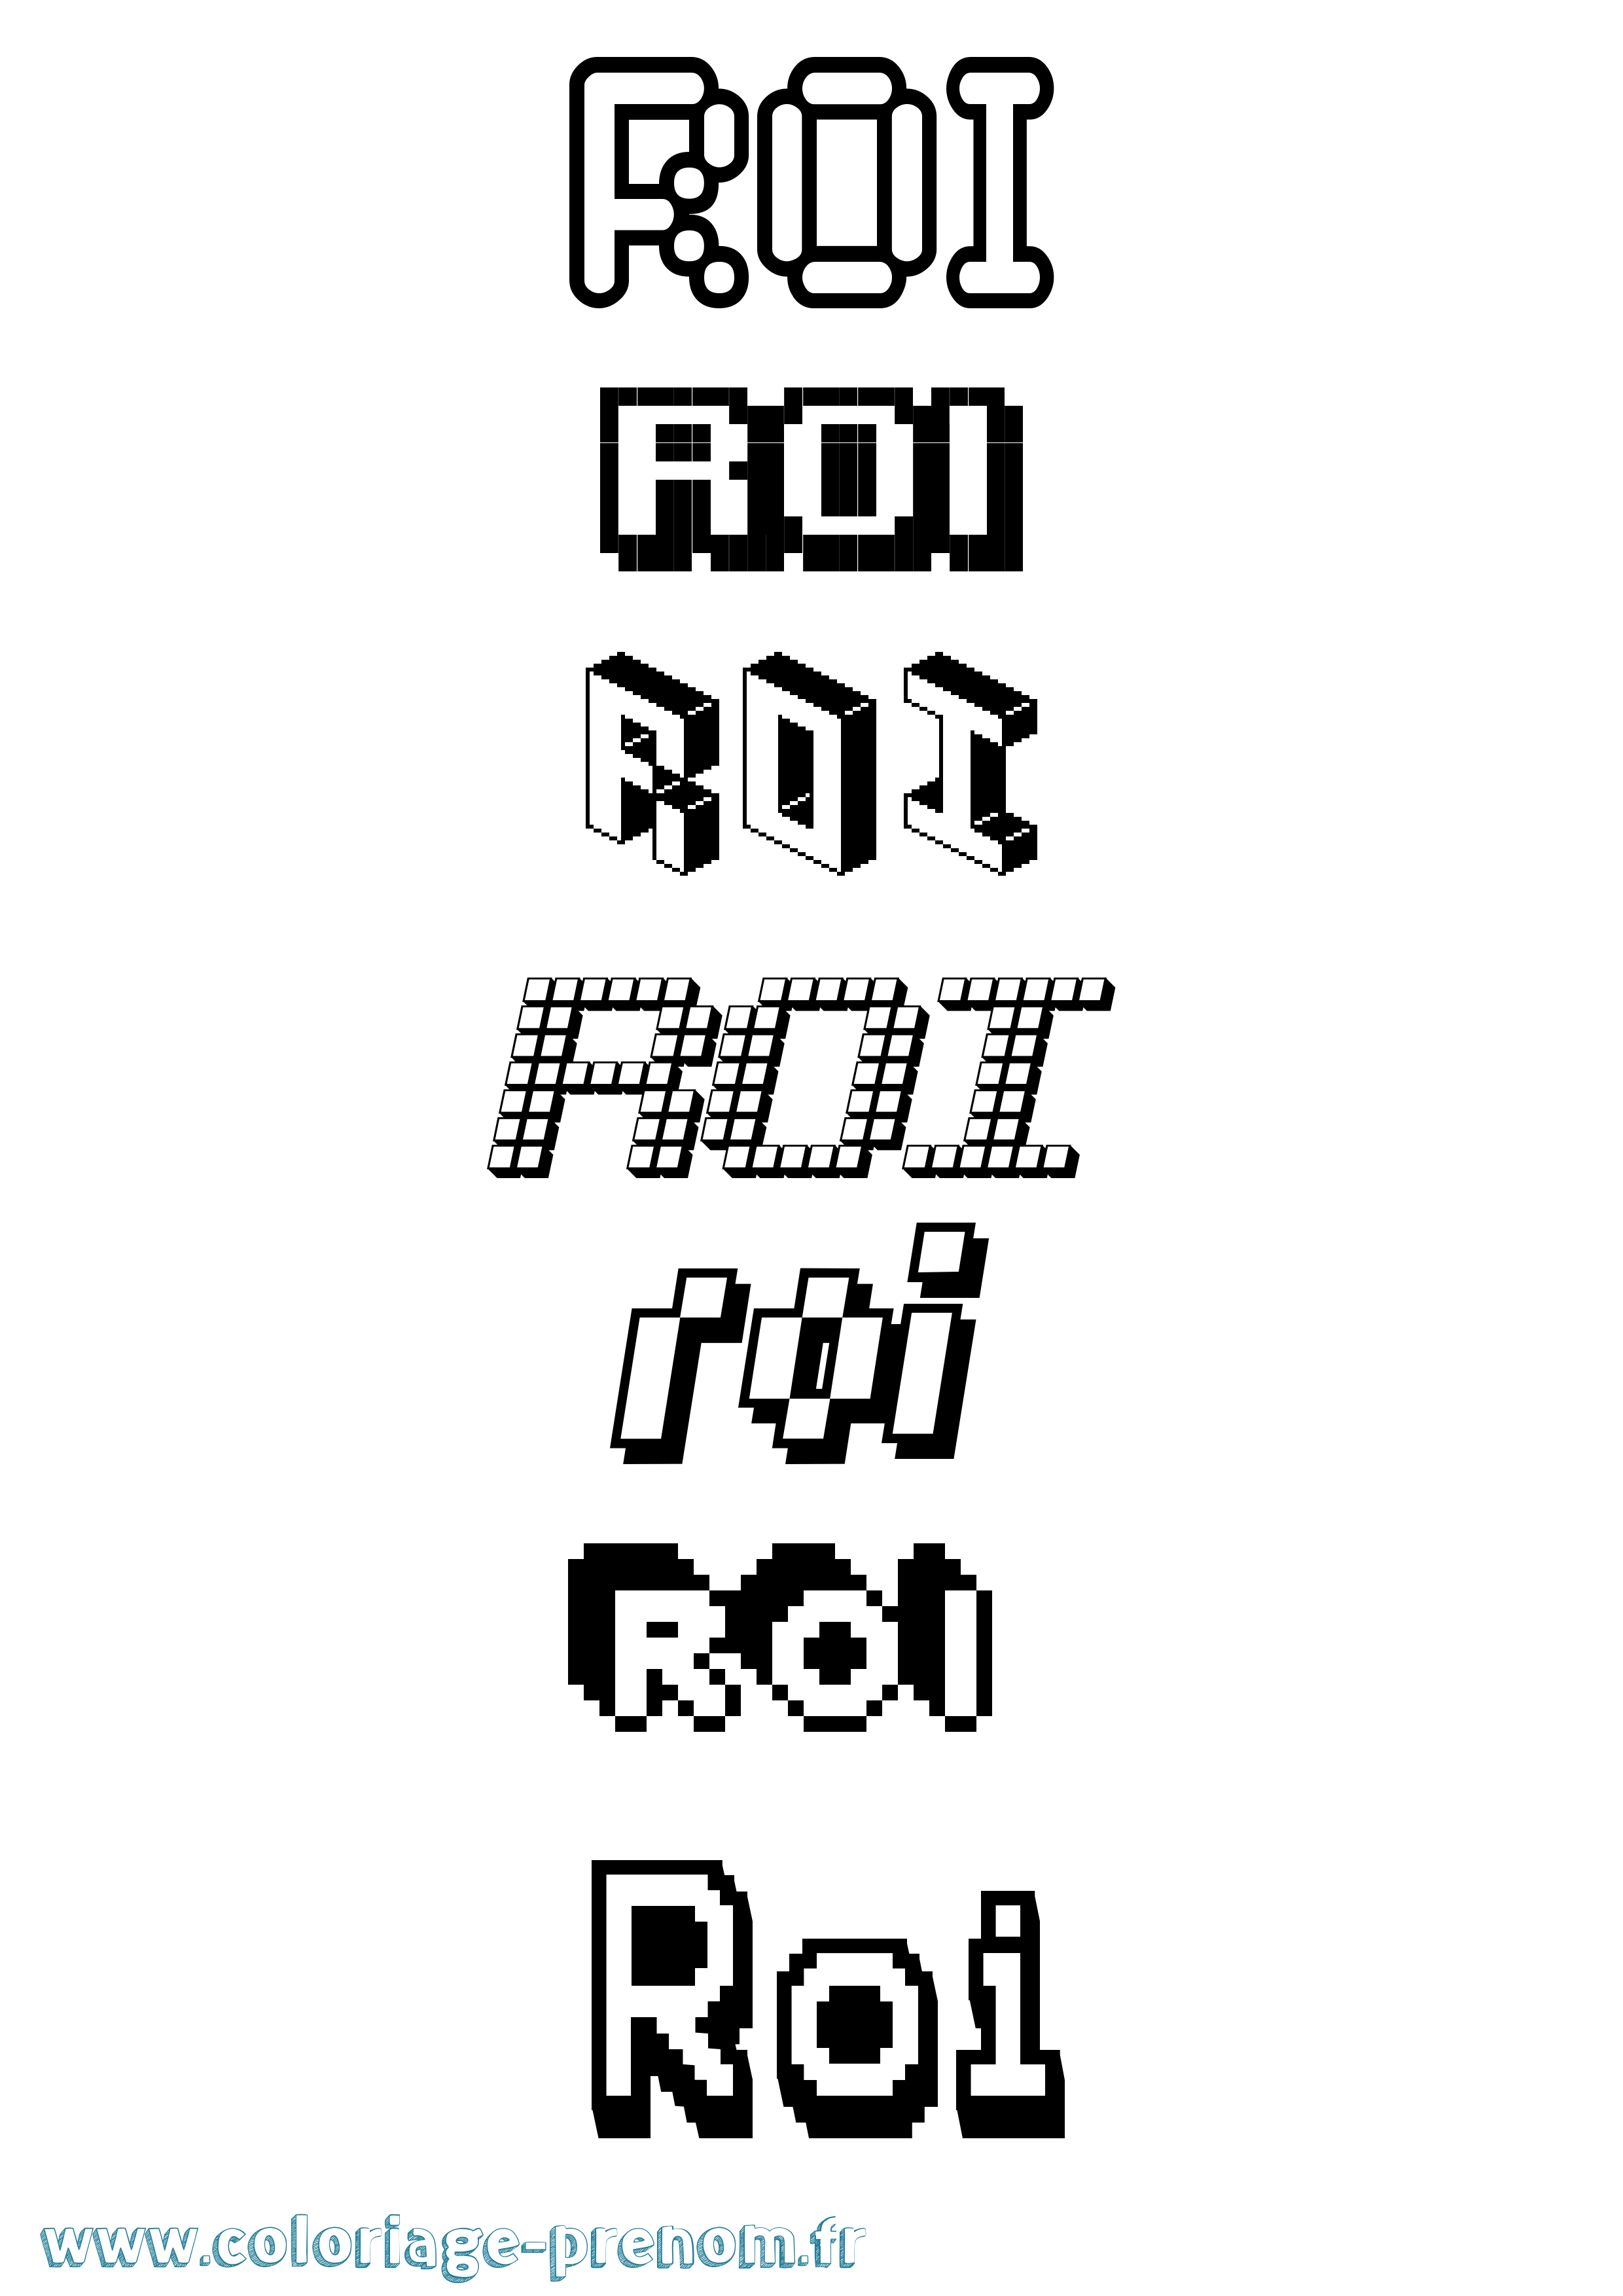 Coloriage prénom Roi Pixel